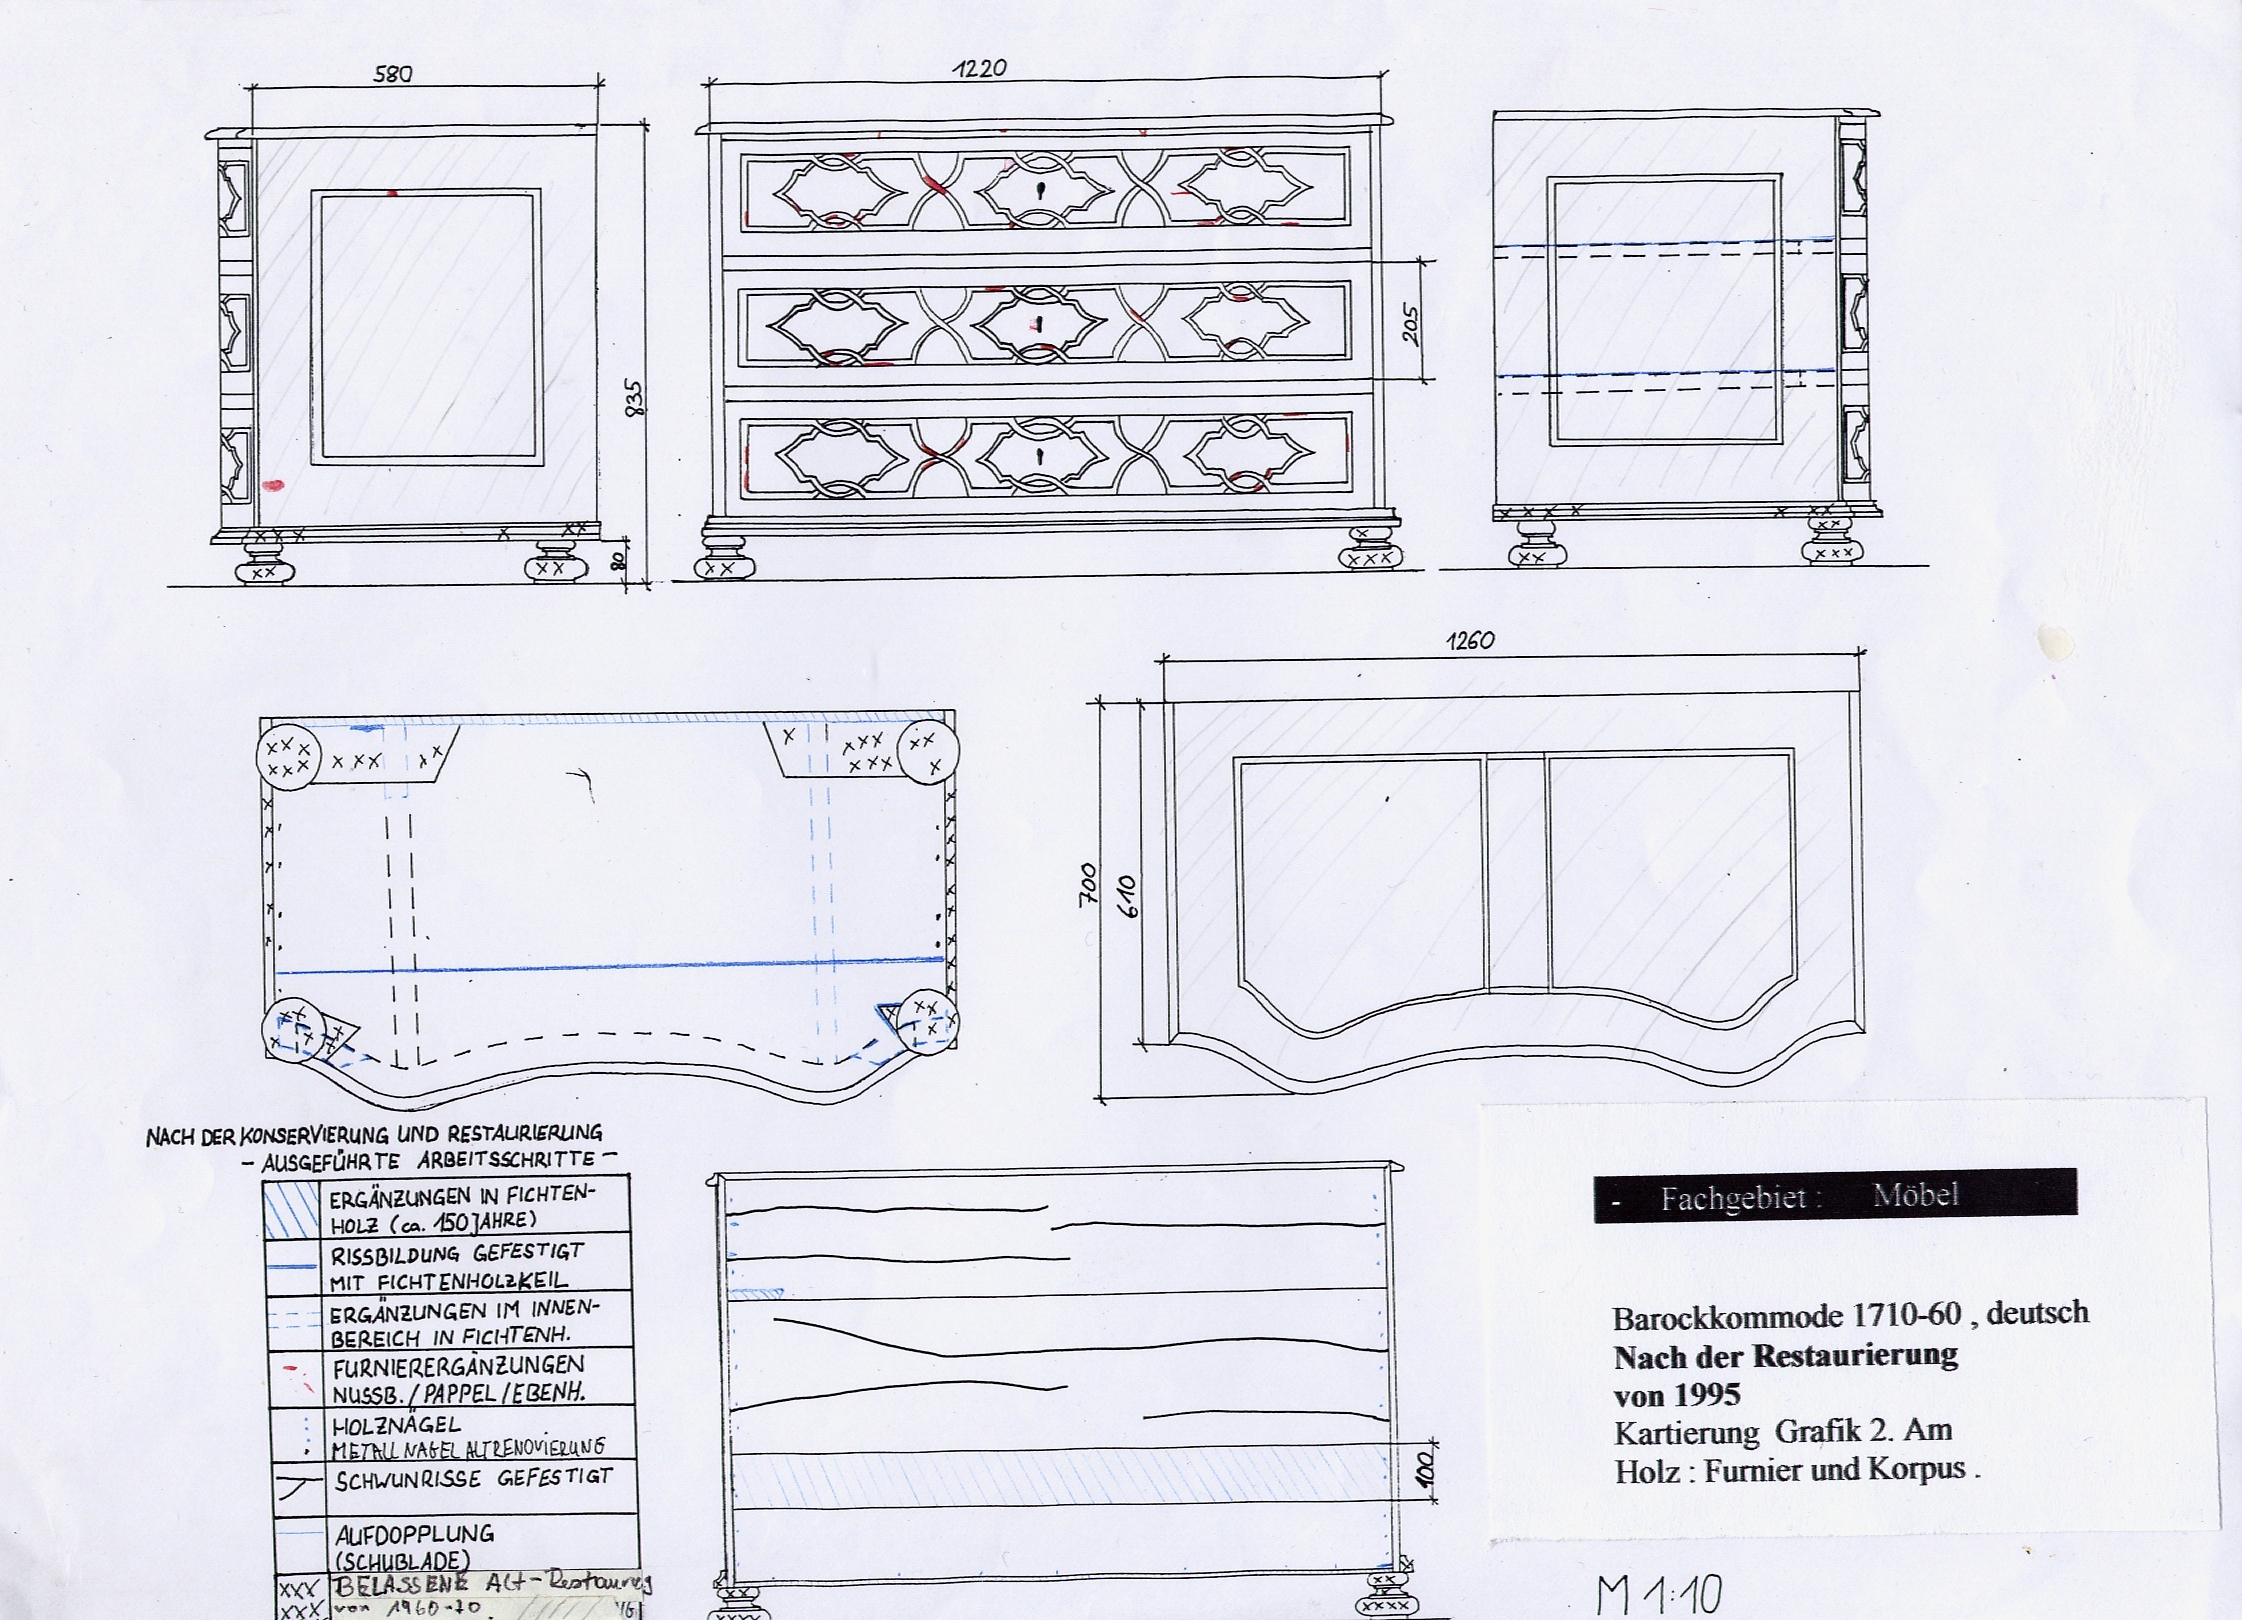 Gutachten -Grafik Befund zum erreichten Ist Zustand nach der Restaurierung an der Barockkommode 1750 Am Korpus und Furnier -Intarsien. Vor der Restaurierung